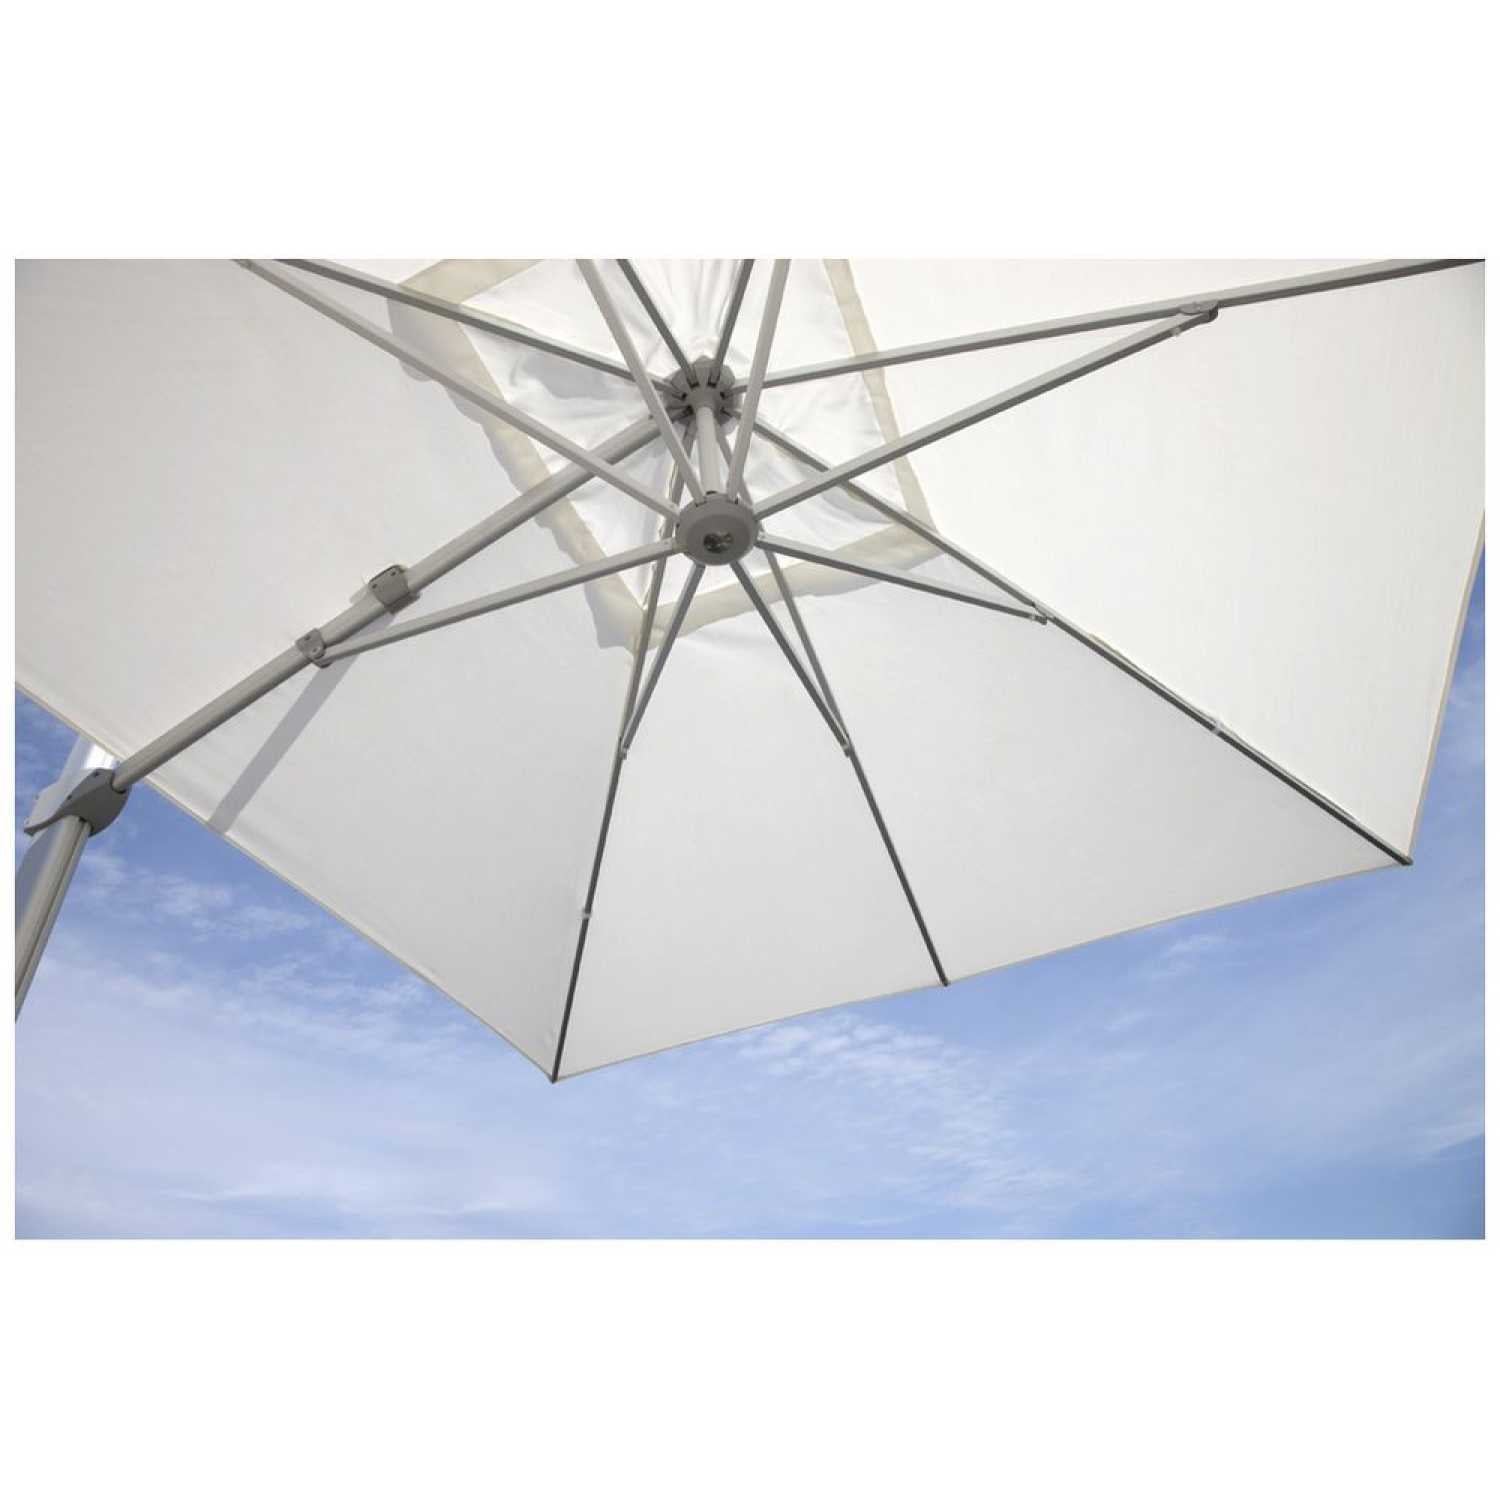 Kingston Cantilever Parasol - PadioLiving - Kingston Cantilever Parasol - Outdoor Parasol - PadioLiving